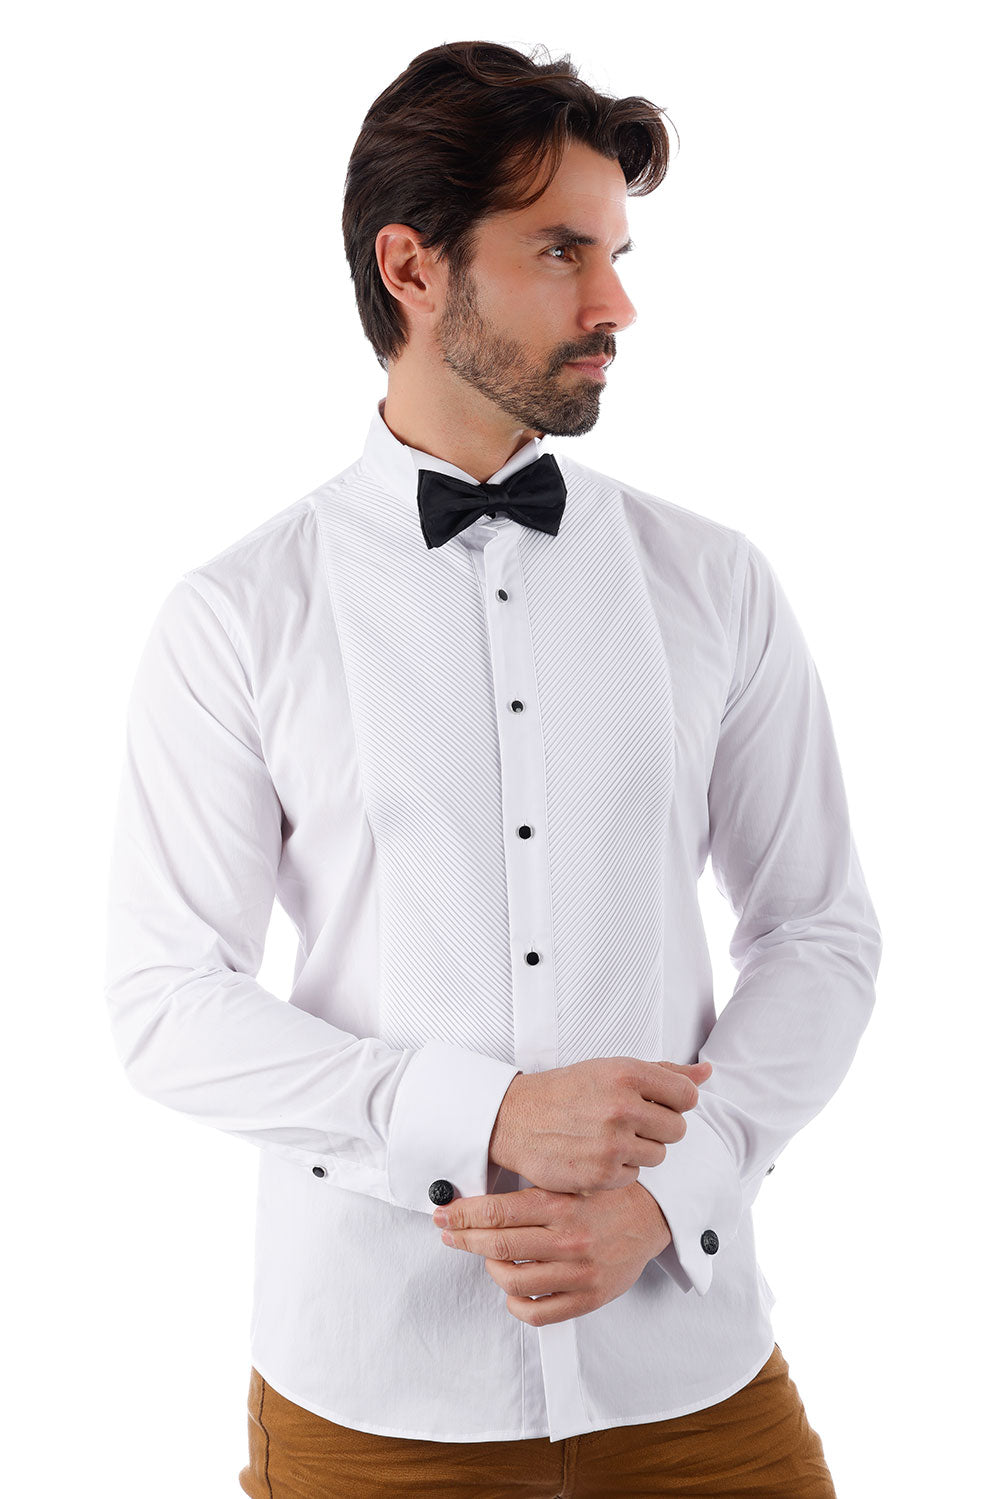 BARABAS Men's Tuxedo Wing Collar Button Down Long Sleeve Shirt 4txs03 White